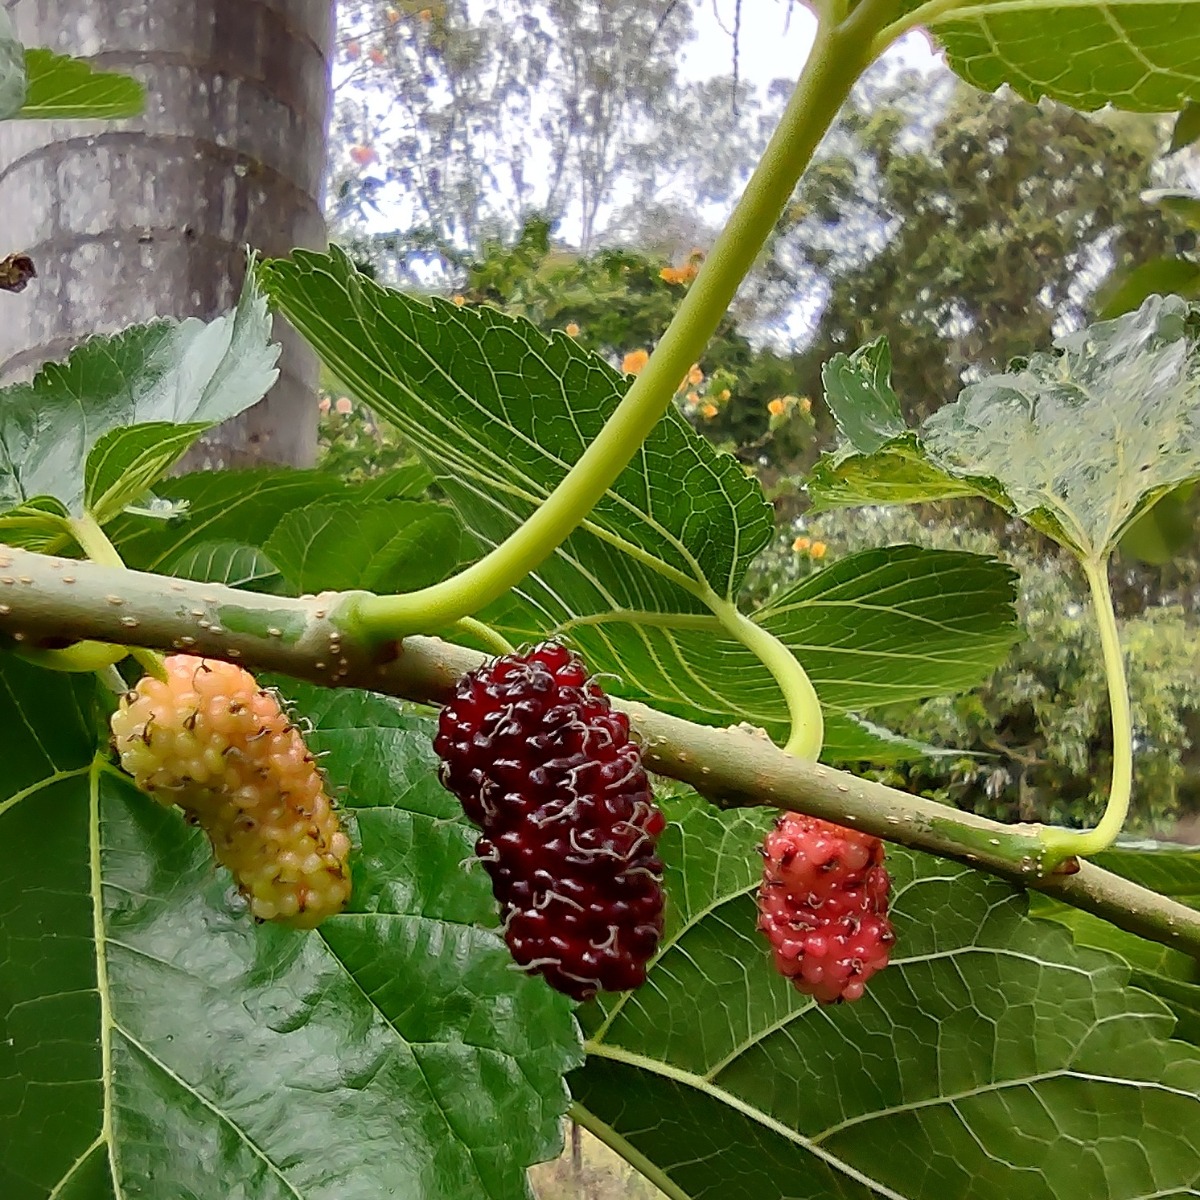 Mulberries growing